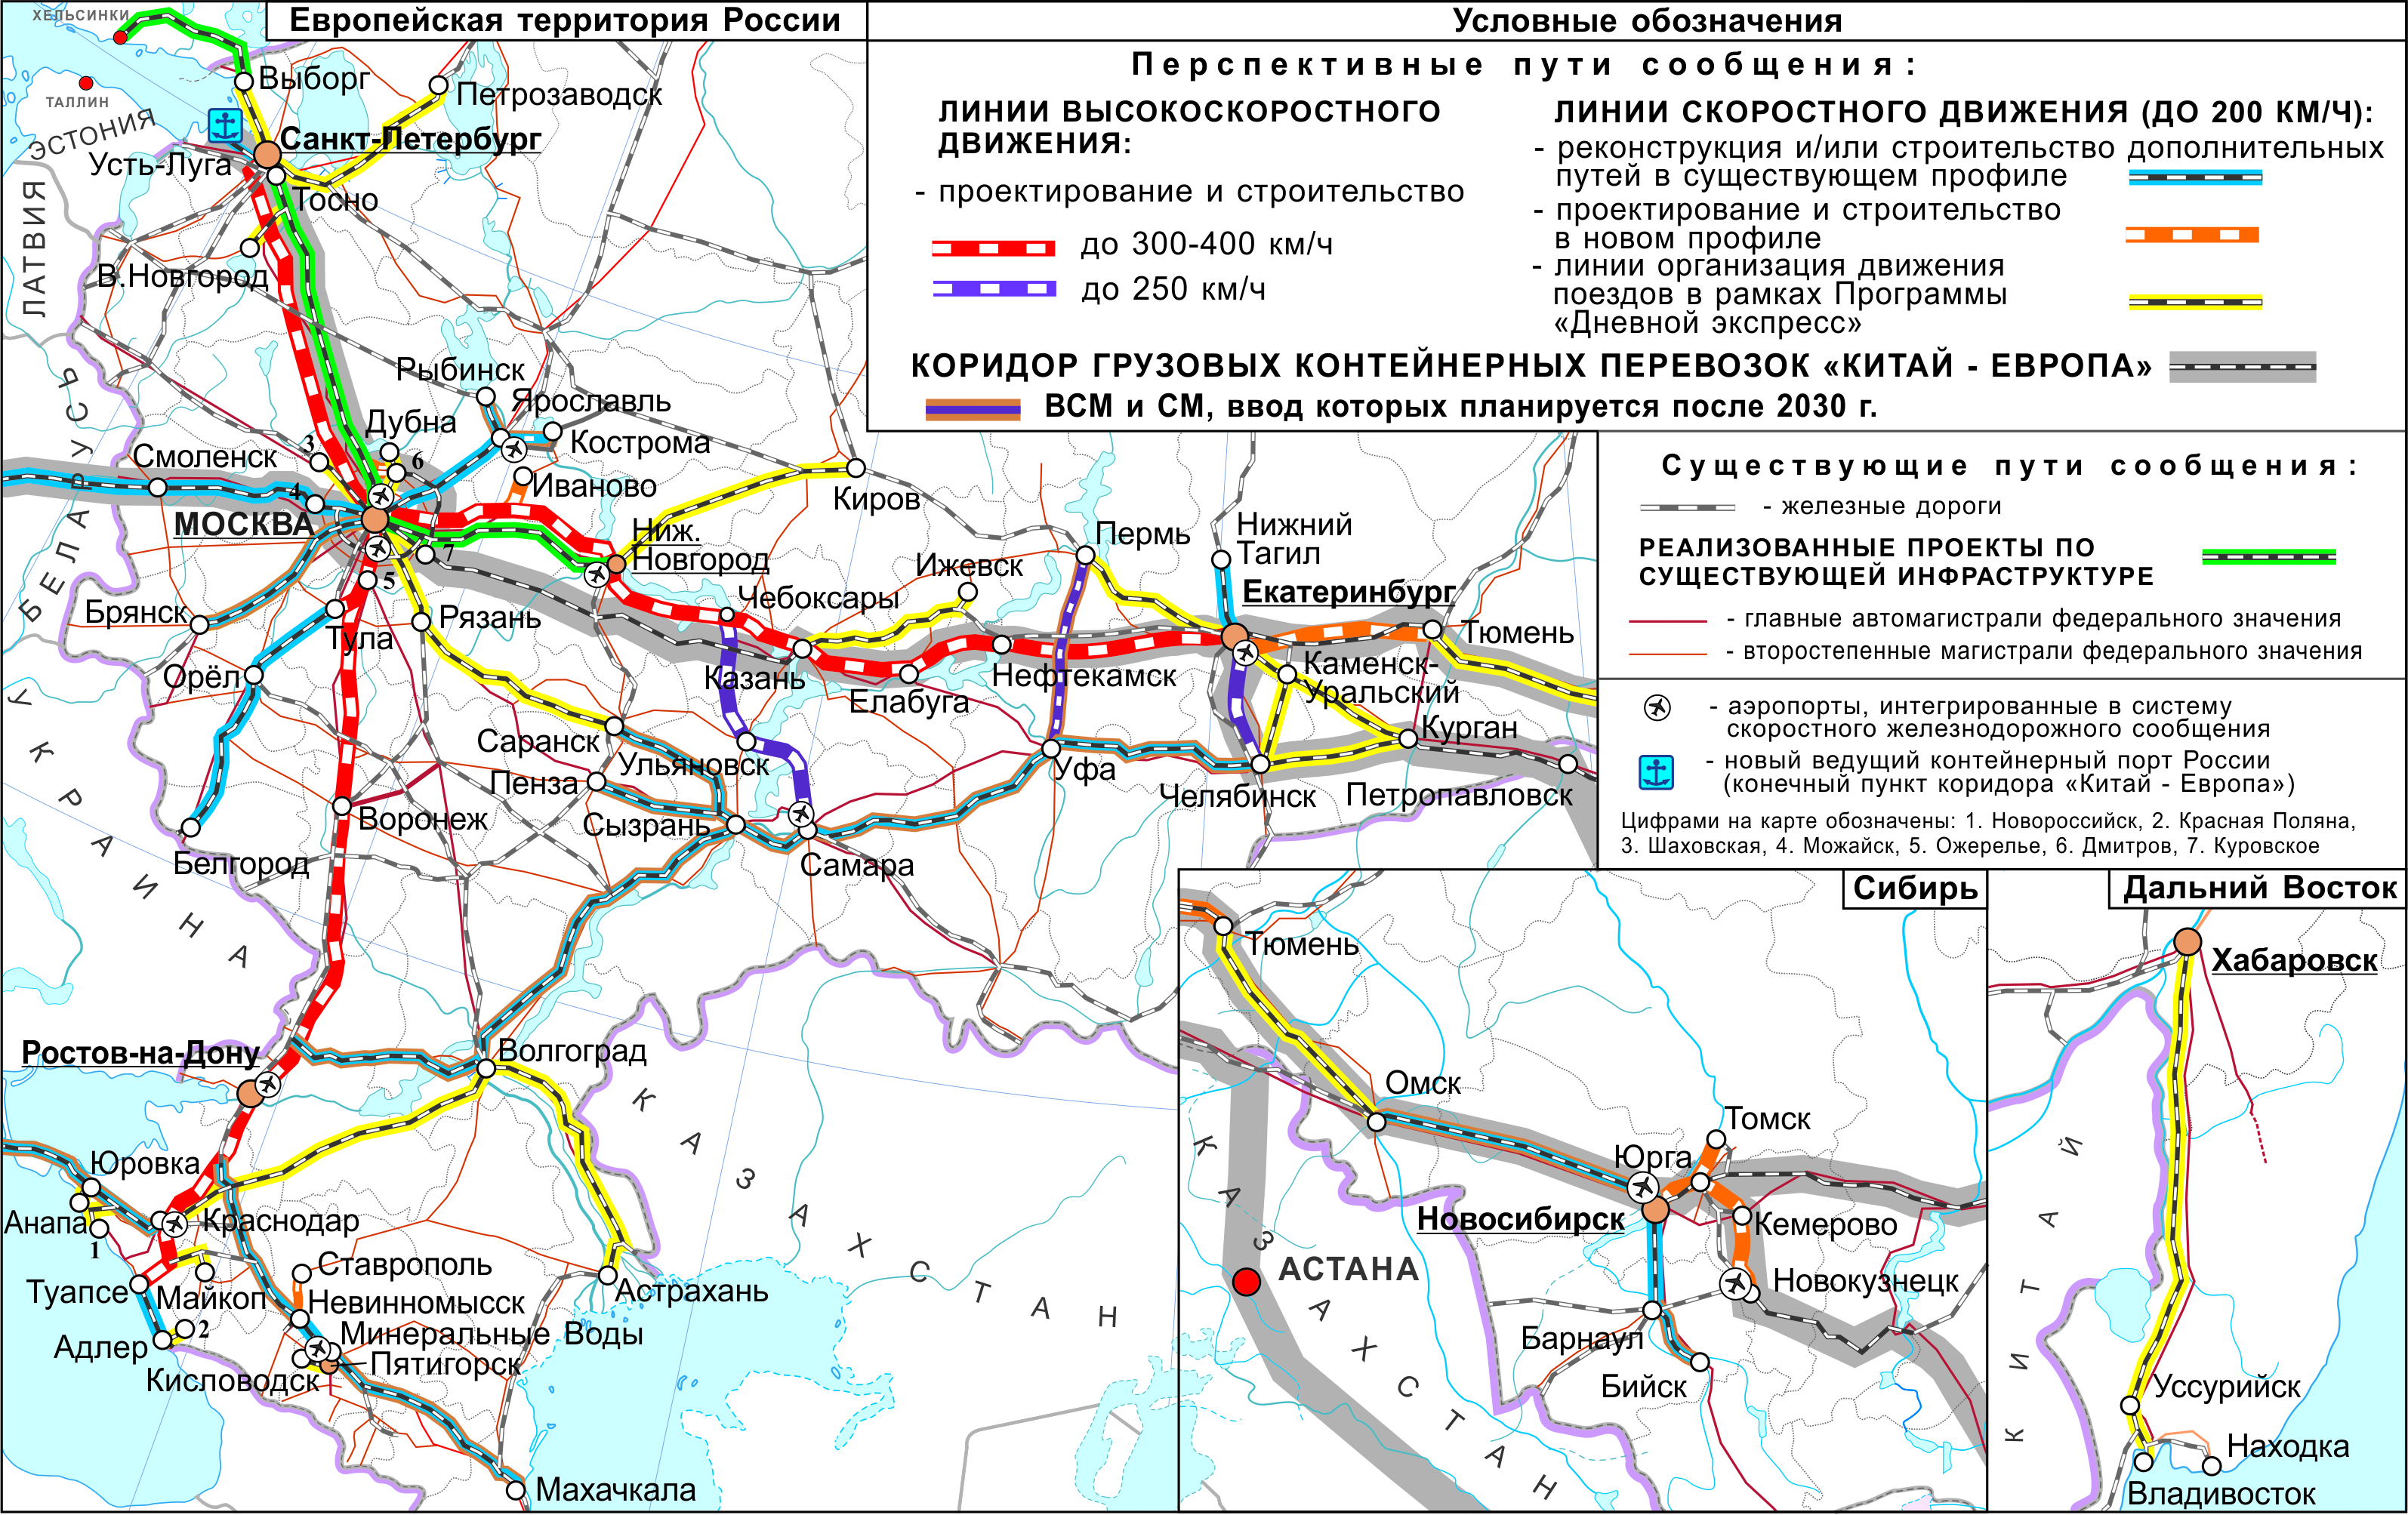 Когда откроют движение поездов. Карта высокоскоростных магистралей в России. ВСМ железная дорога Москва Санкт-Петербург. Высокоскоростная ж д магистраль Москва-Санкт-Петербург. Высокоскоростная Железнодорожная магистраль Москва Адлер.